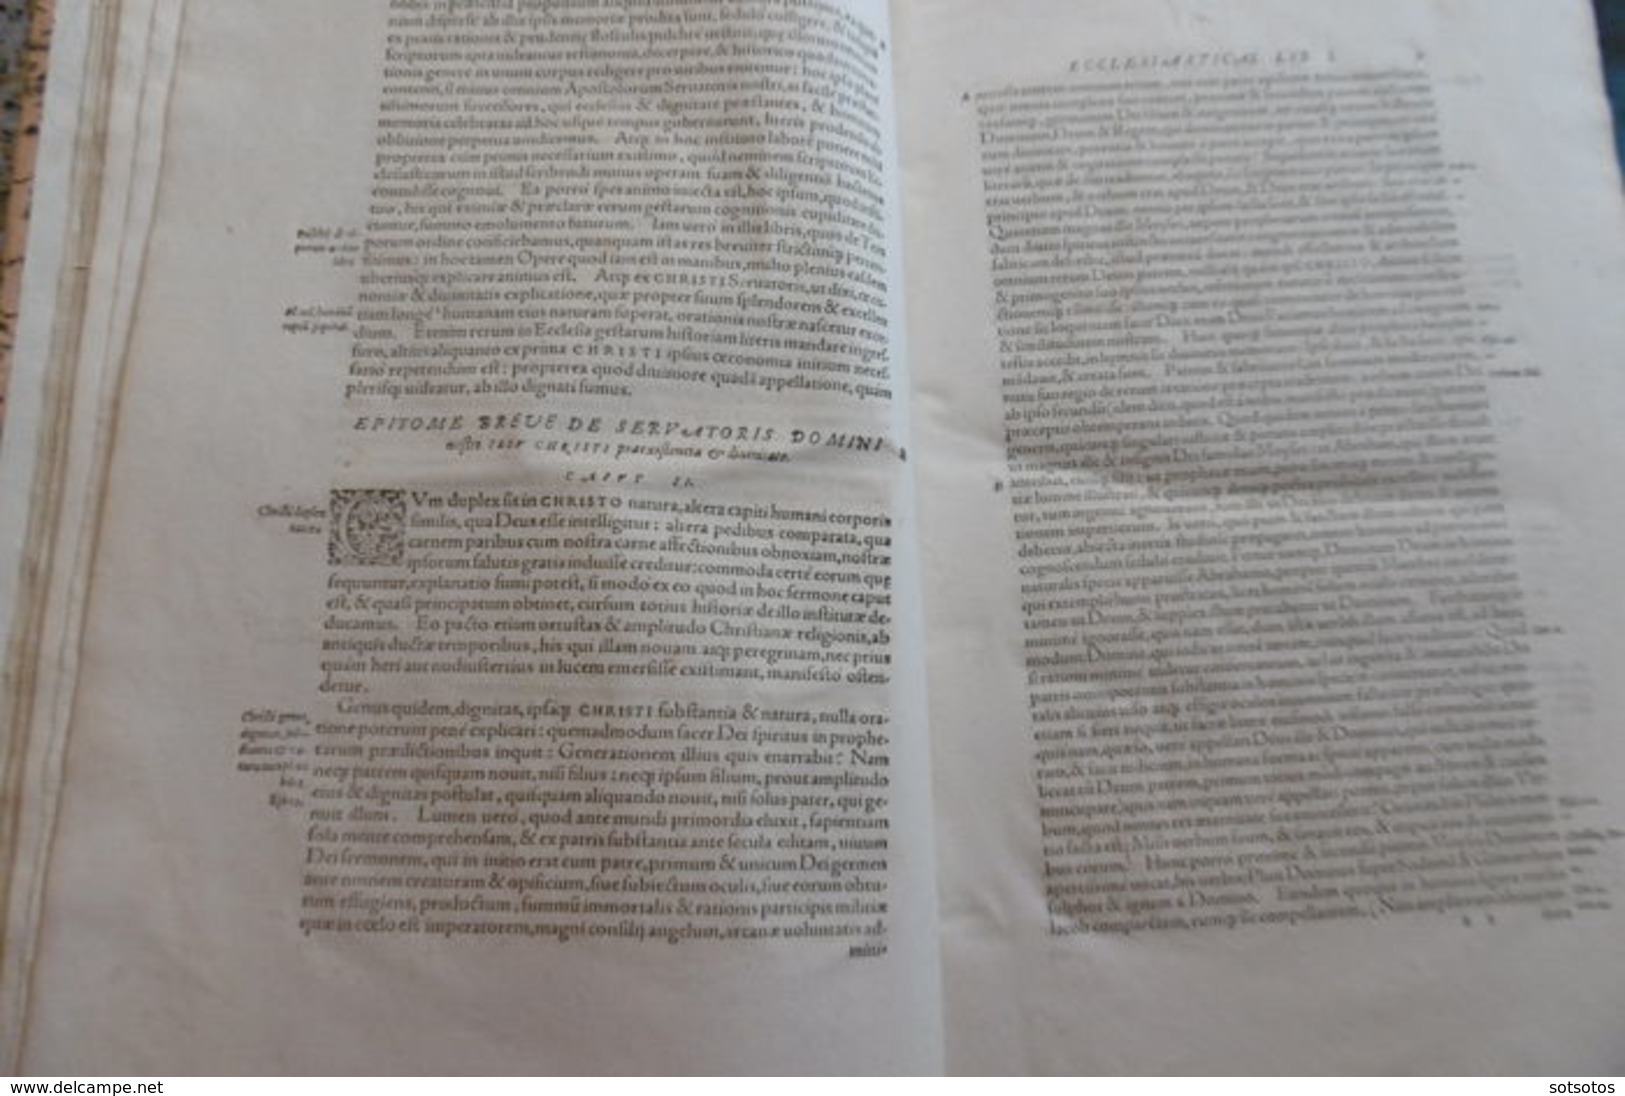 Scrittori Greci - Historiae ecclesiasticae scriptores Graeci - 1570